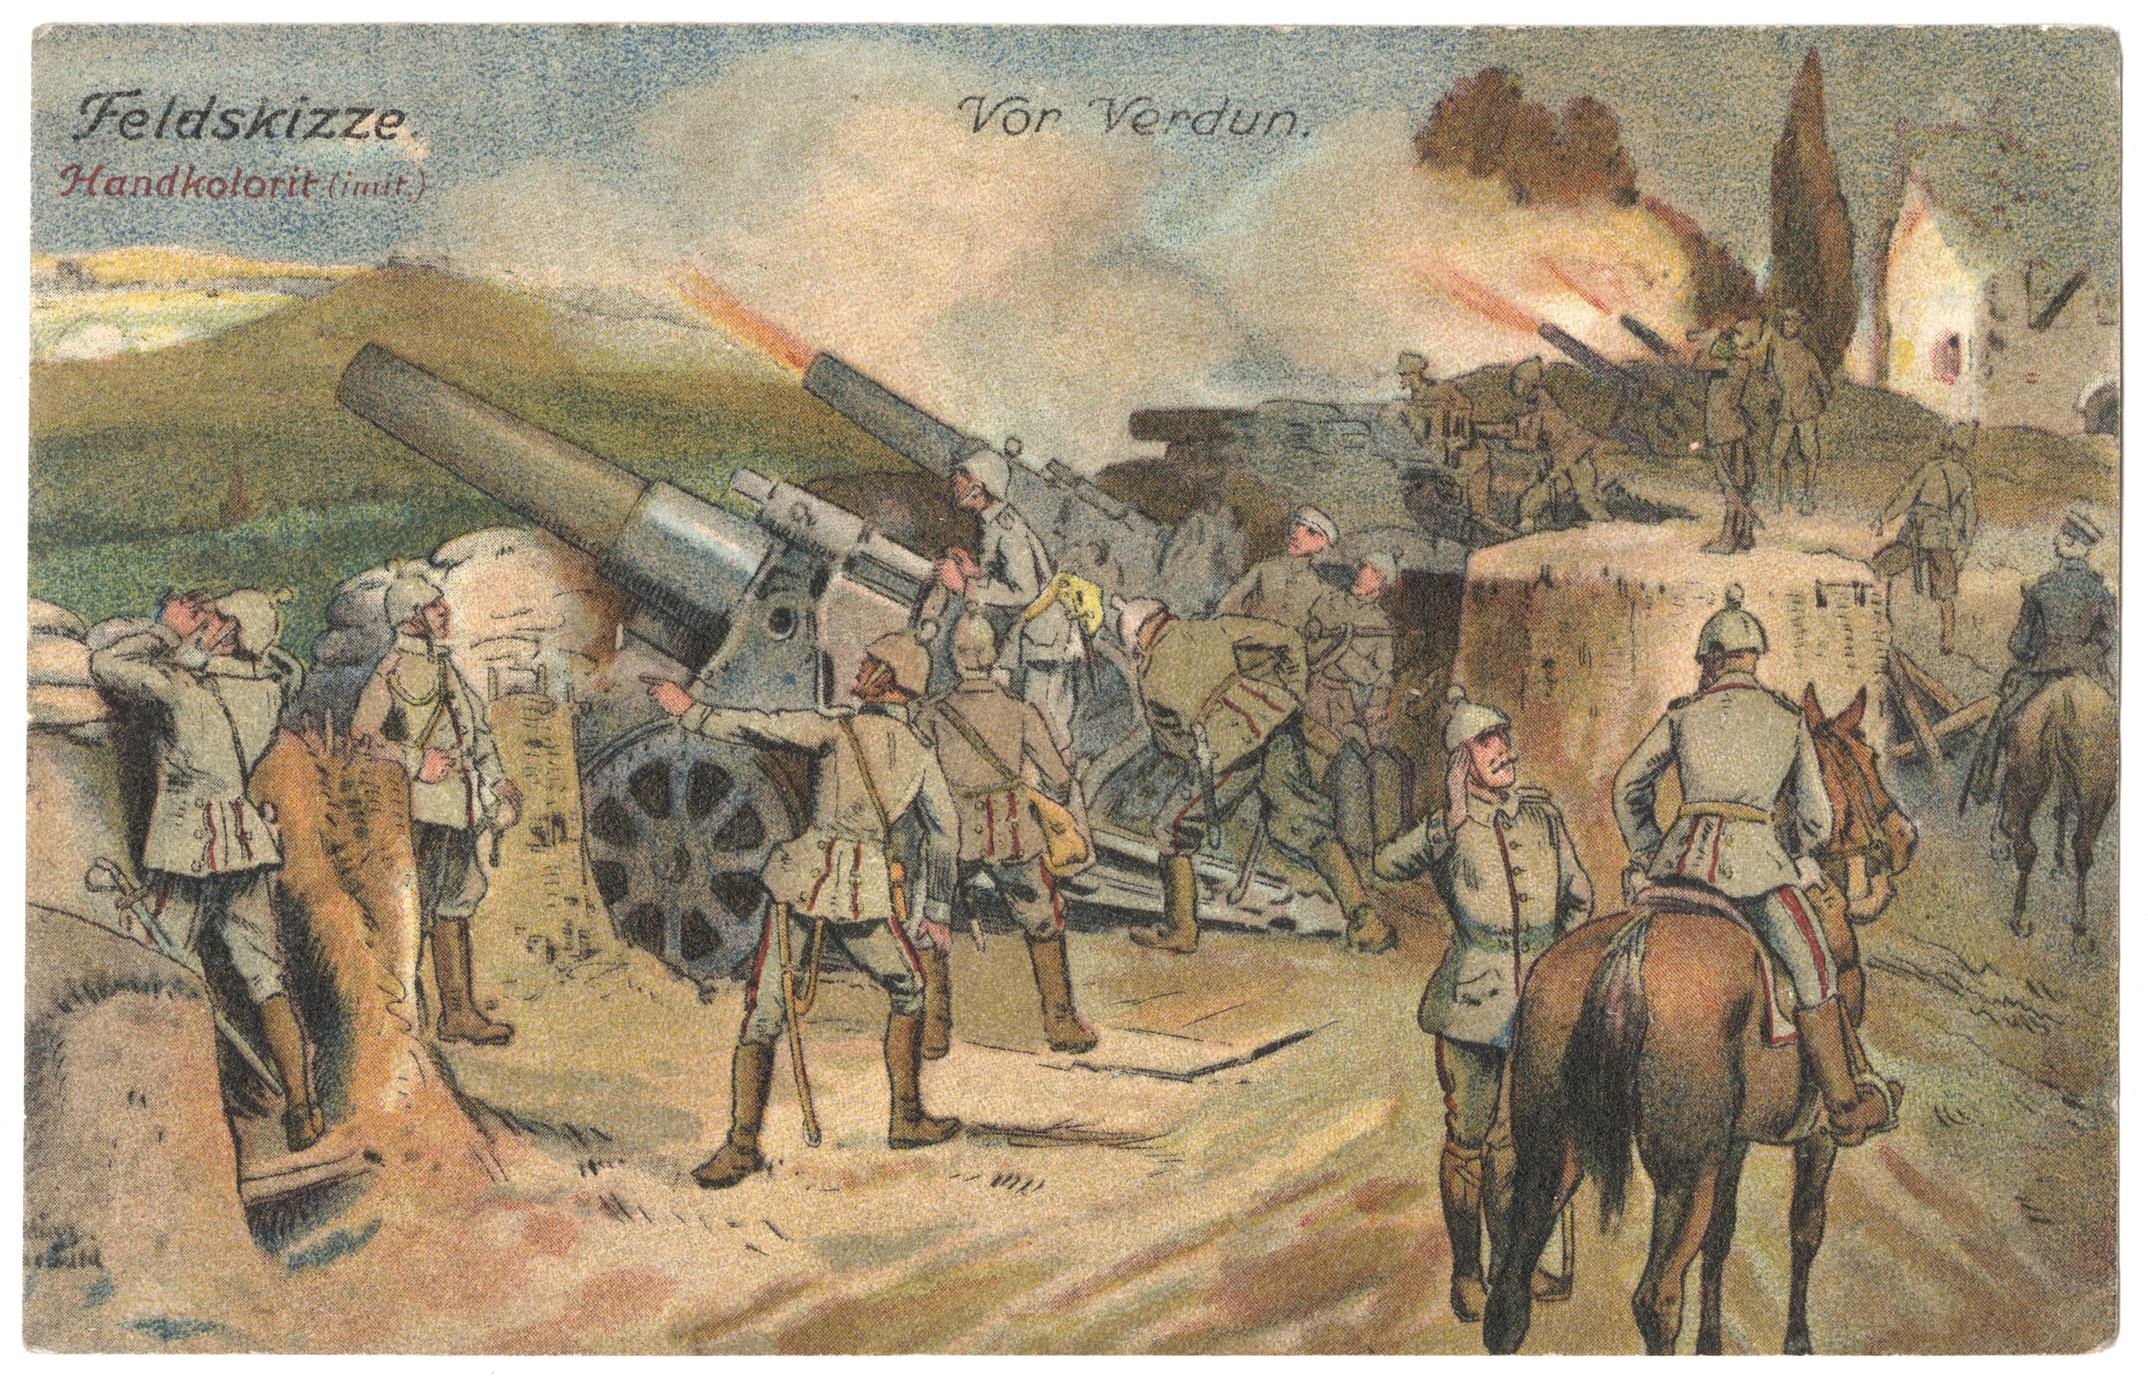 Feldskizze : vor Verdun